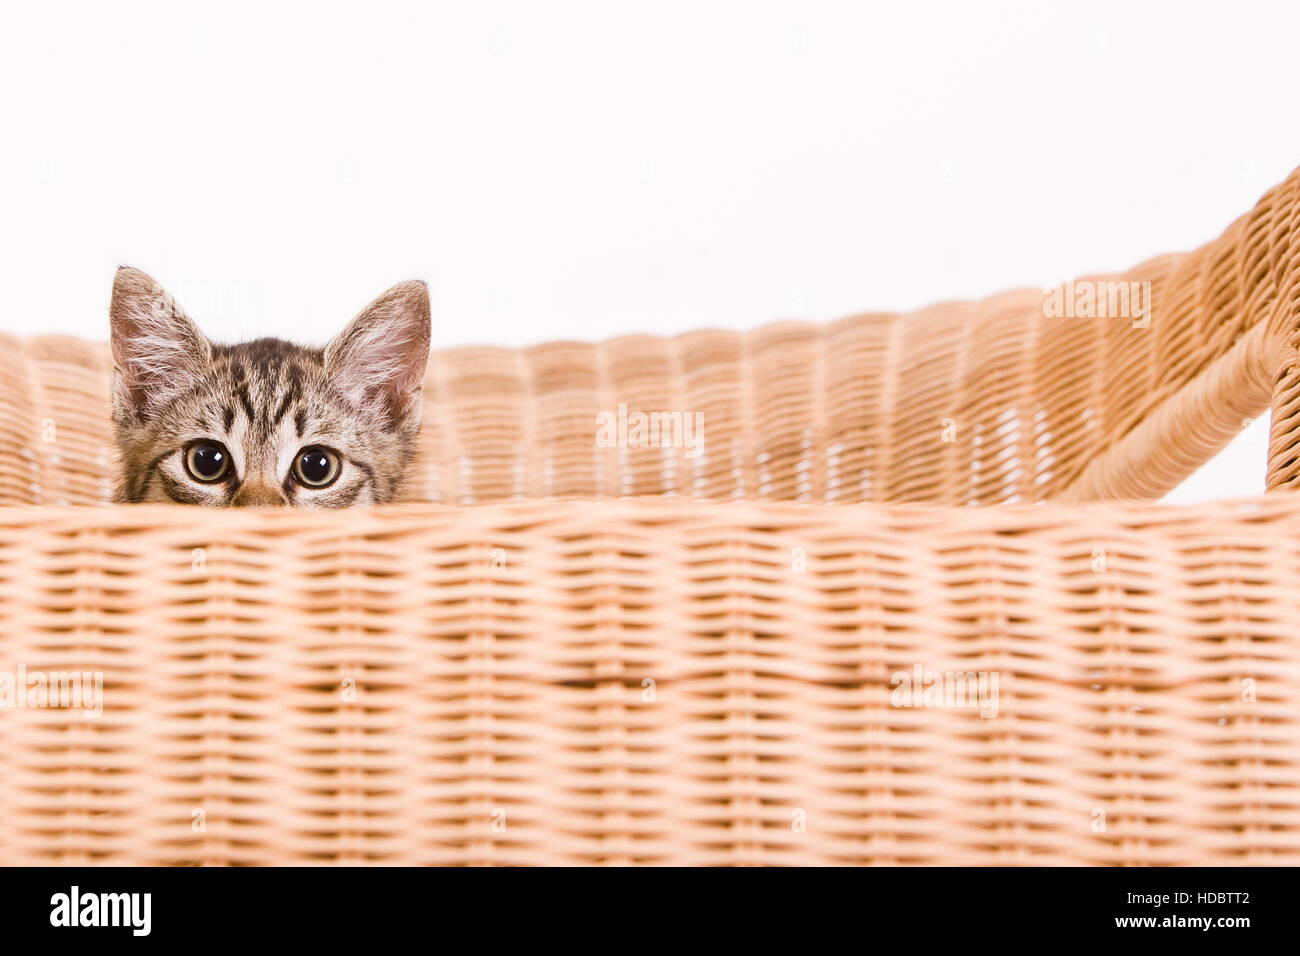 Kitten on a chair Stock Photo